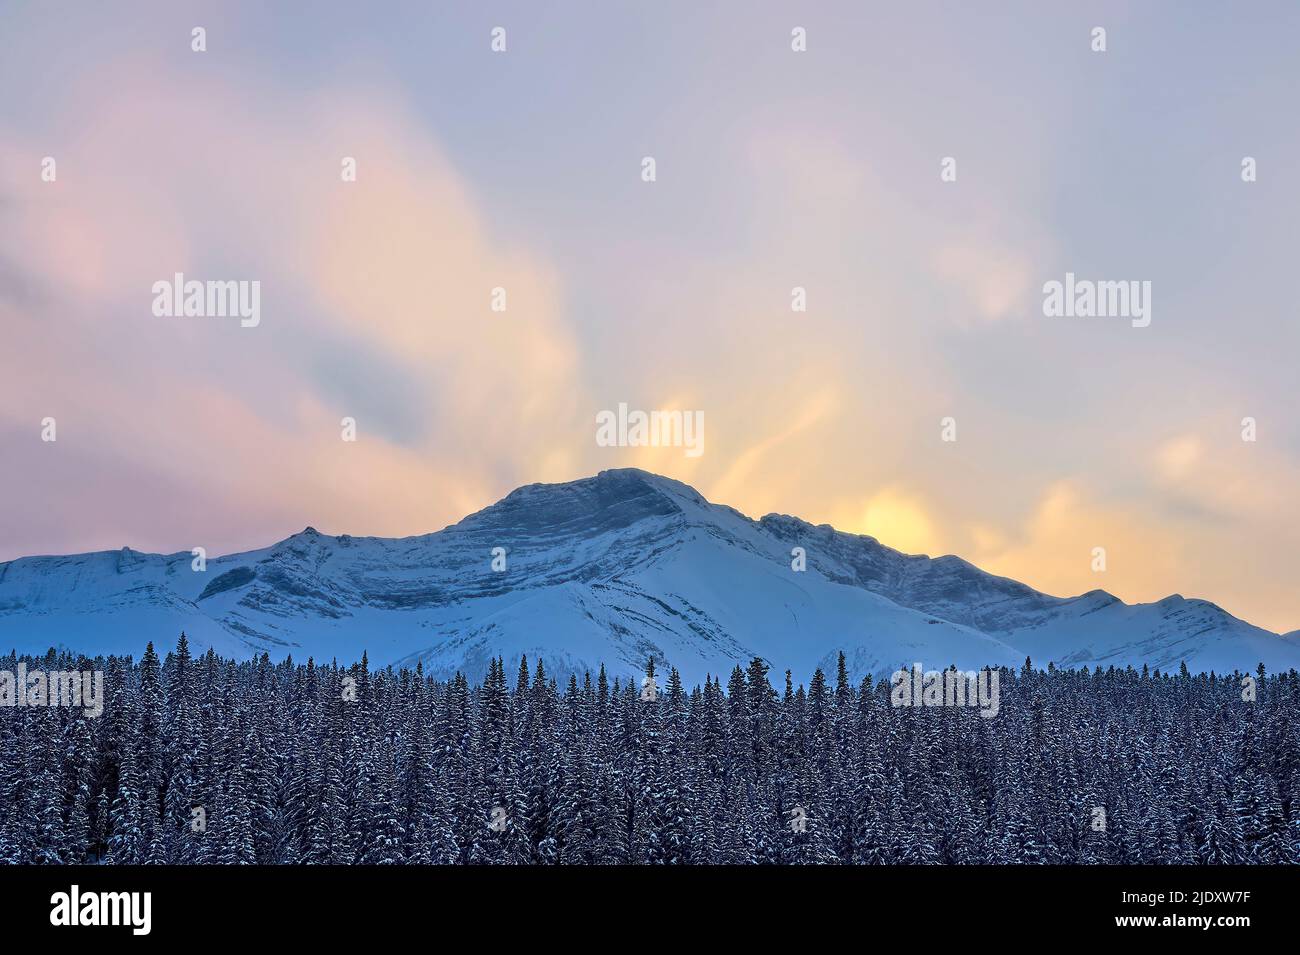 Un hermoso cielo de invierno sobre una montaña rocosa nevada en el oeste de Alberta, Canadá Foto de stock